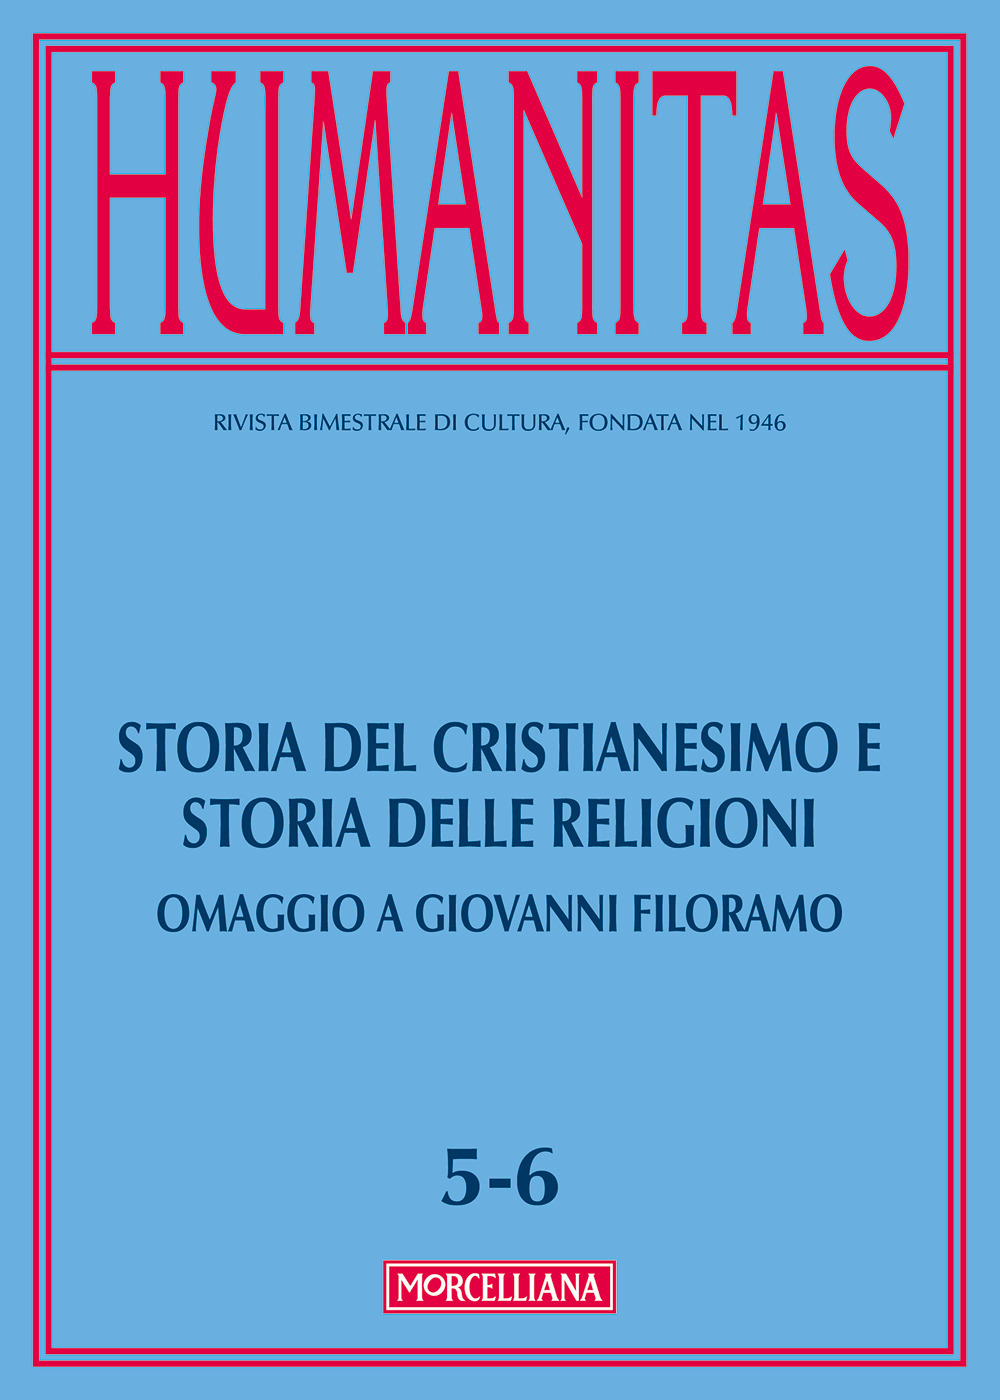 Image of Humanitas (2017). Vol. 5-6: Storia del cristianesimo e storia delle religioni. Omaggio a Giovanni Filoramo.